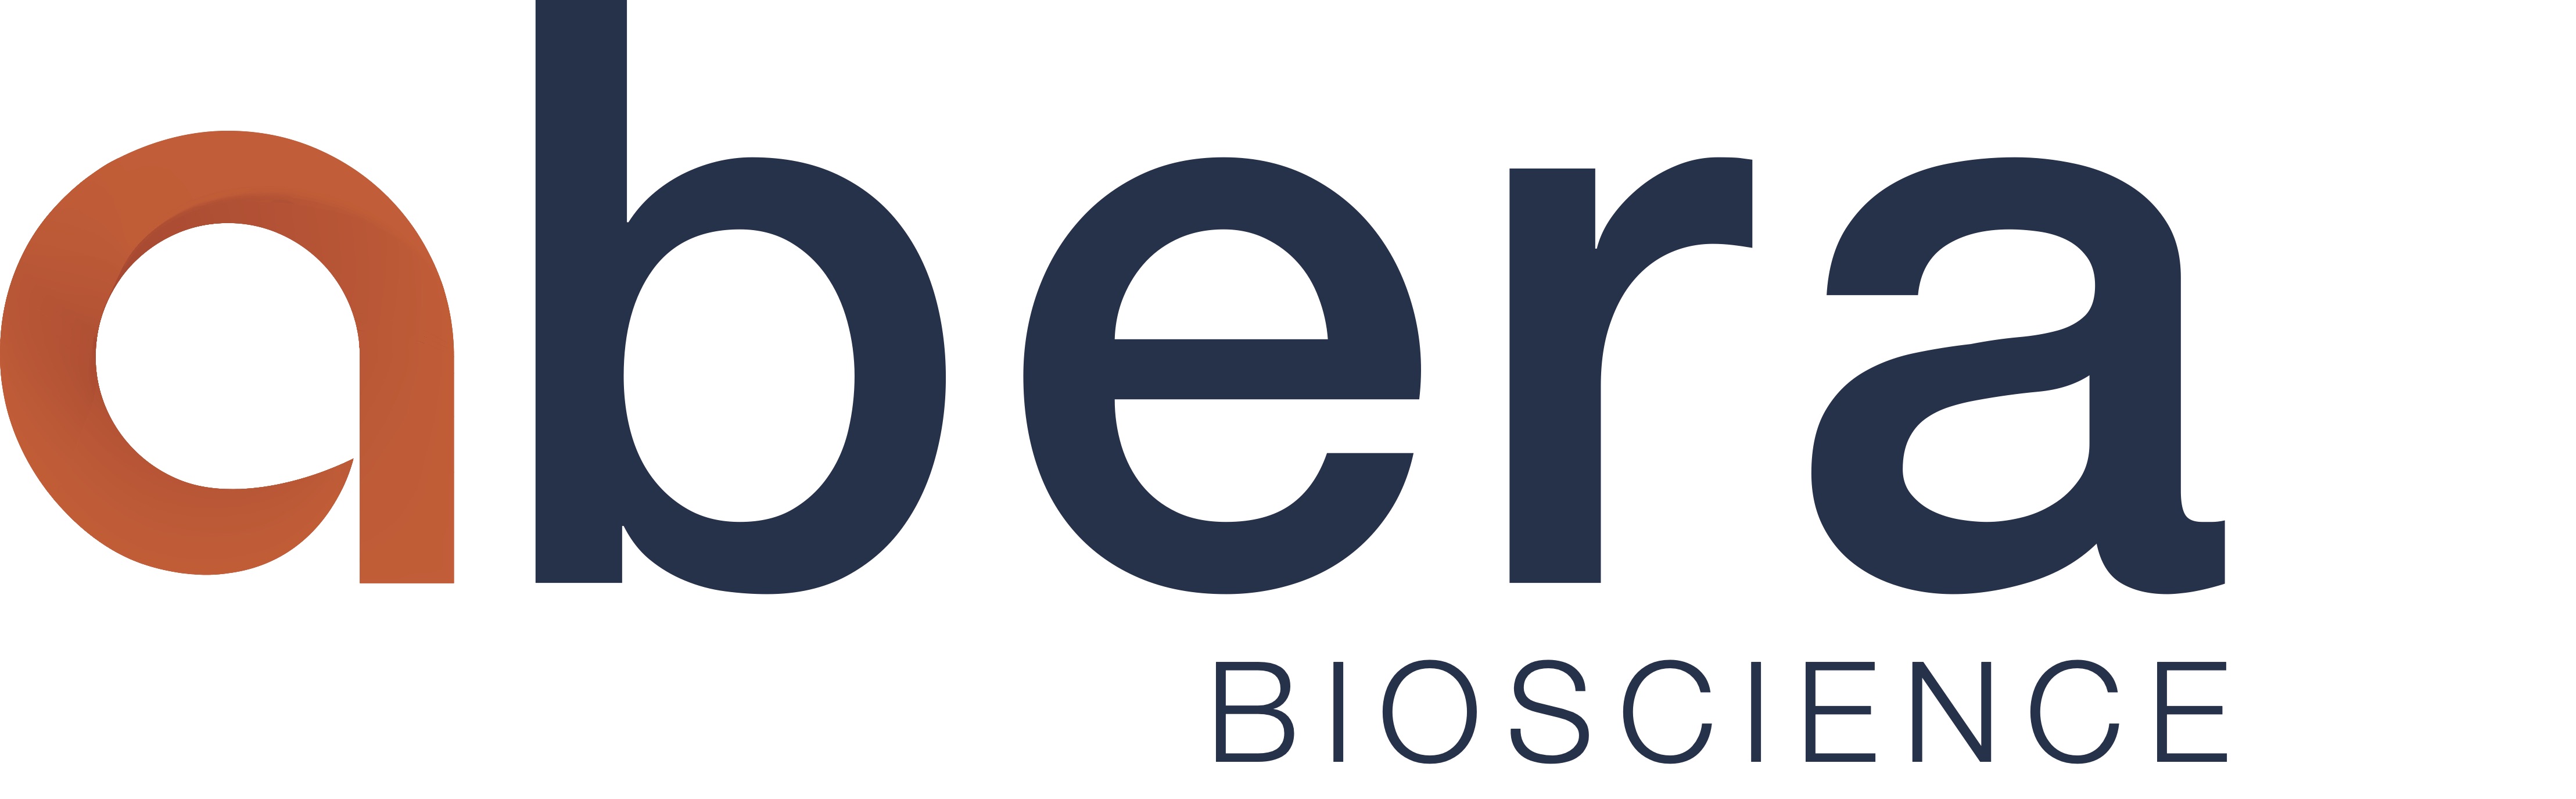 Abera Bioscience AB Logotyp